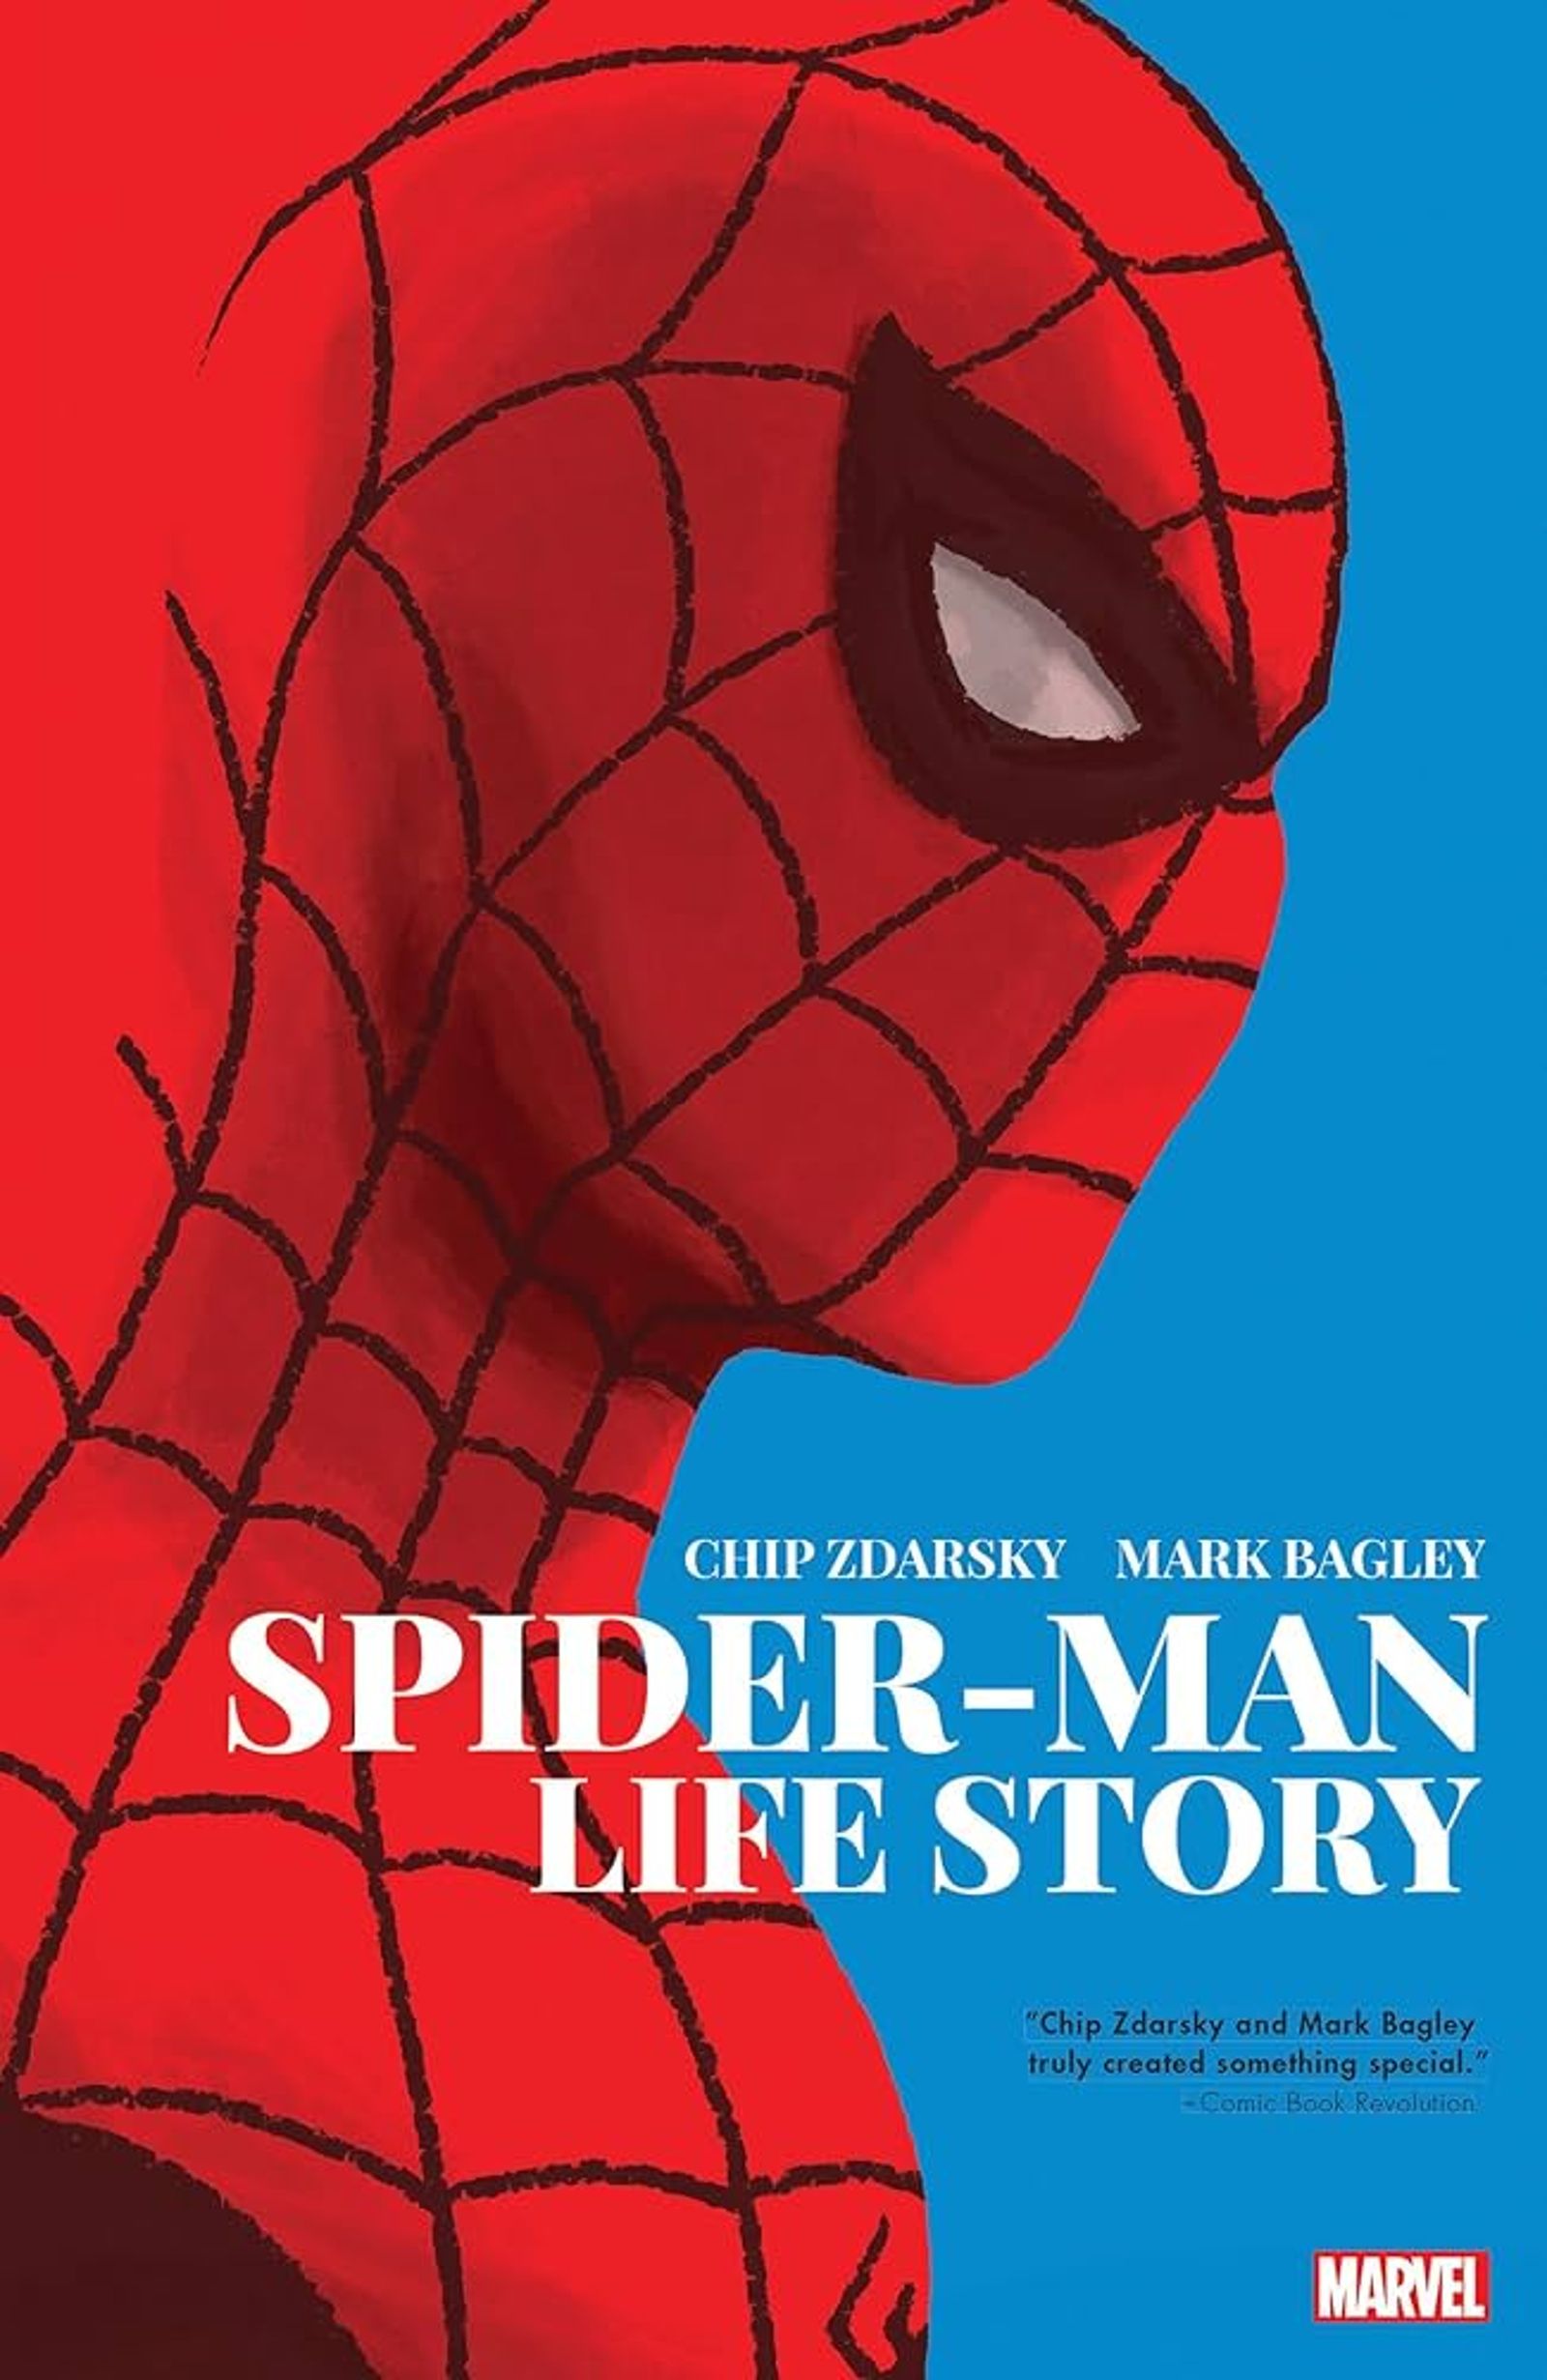 Capa completa da história de vida do Homem-Aranha